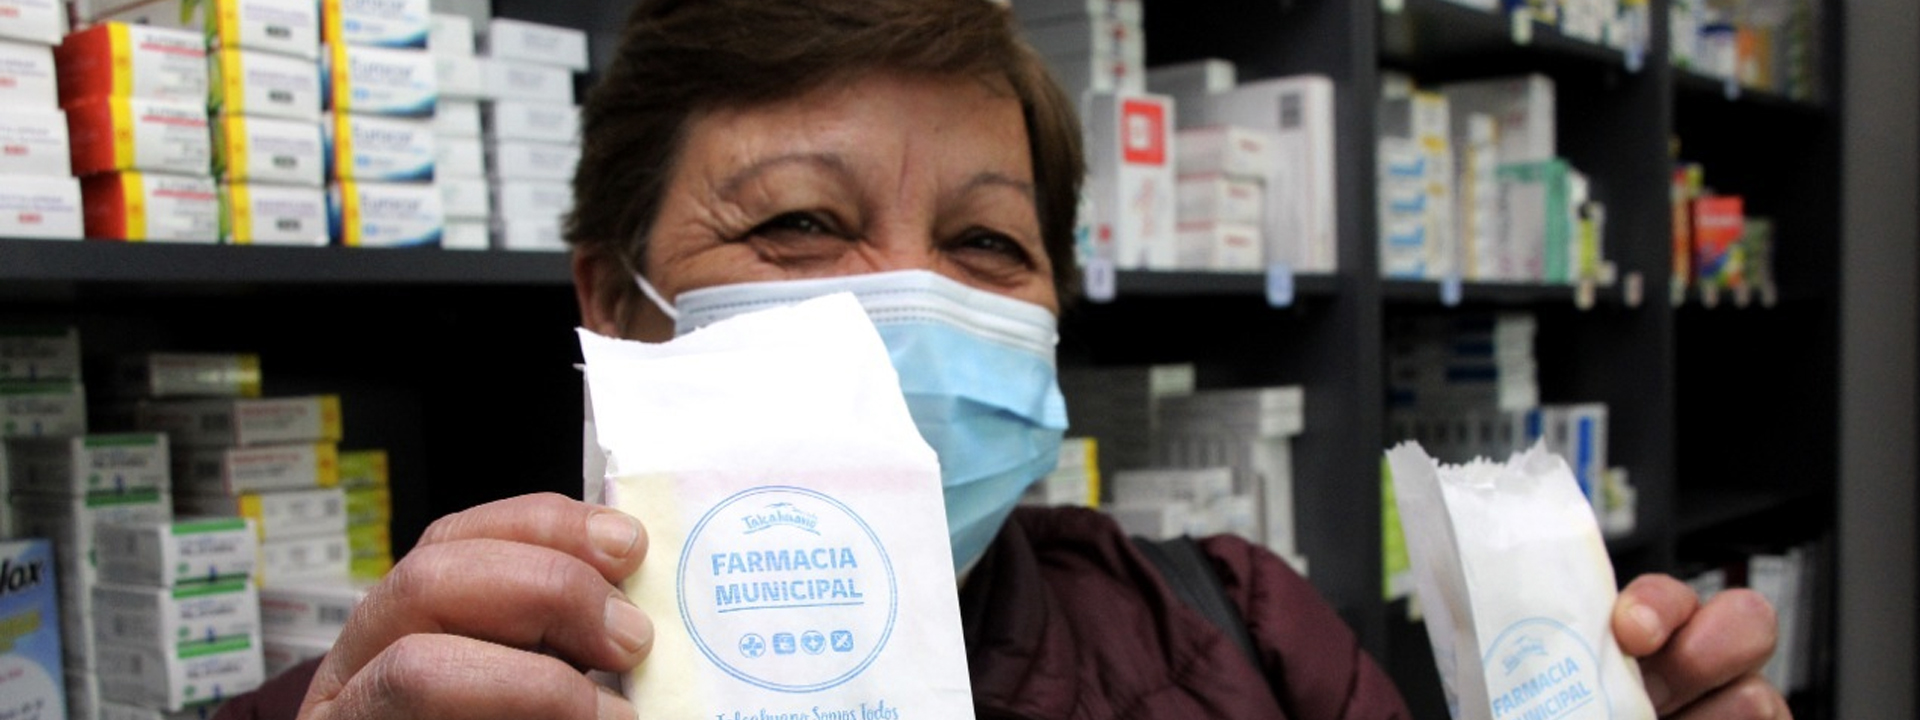 Talcahuano inaugura farmacia municipal para aliviar el bolsillo de sus vecinos